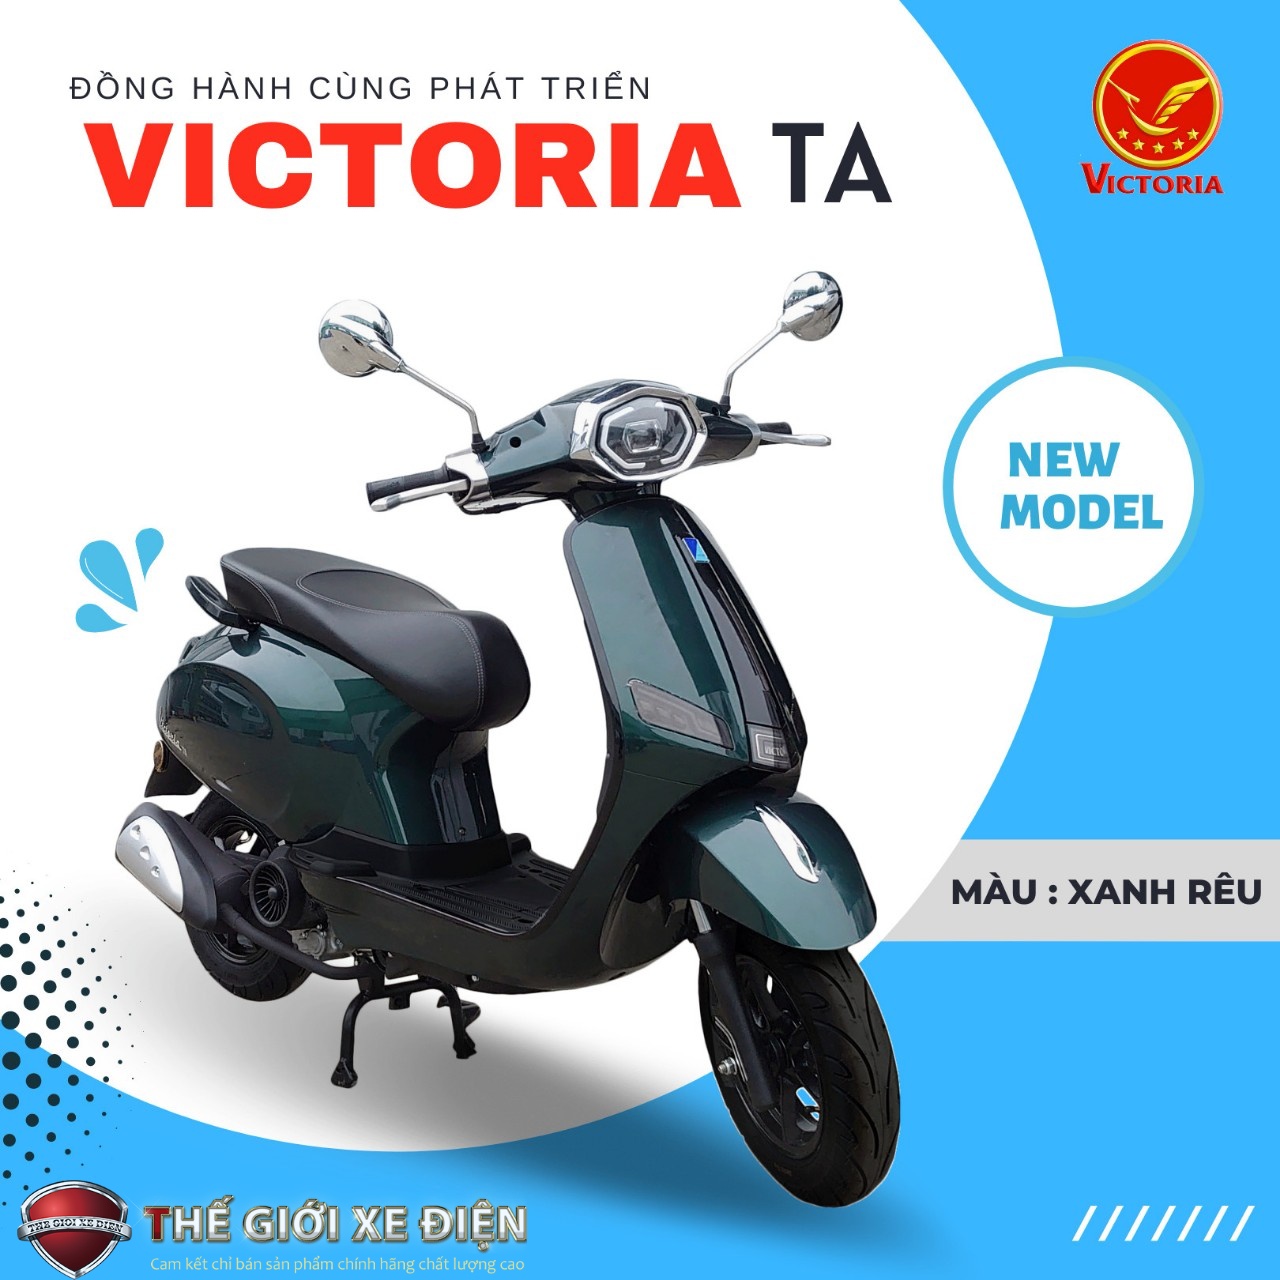 Hướng dẫn hô biến xe tay ga 50cc Victoria TA Việt Nhật 2022 lúc nào cũng bóng bẩy như mới